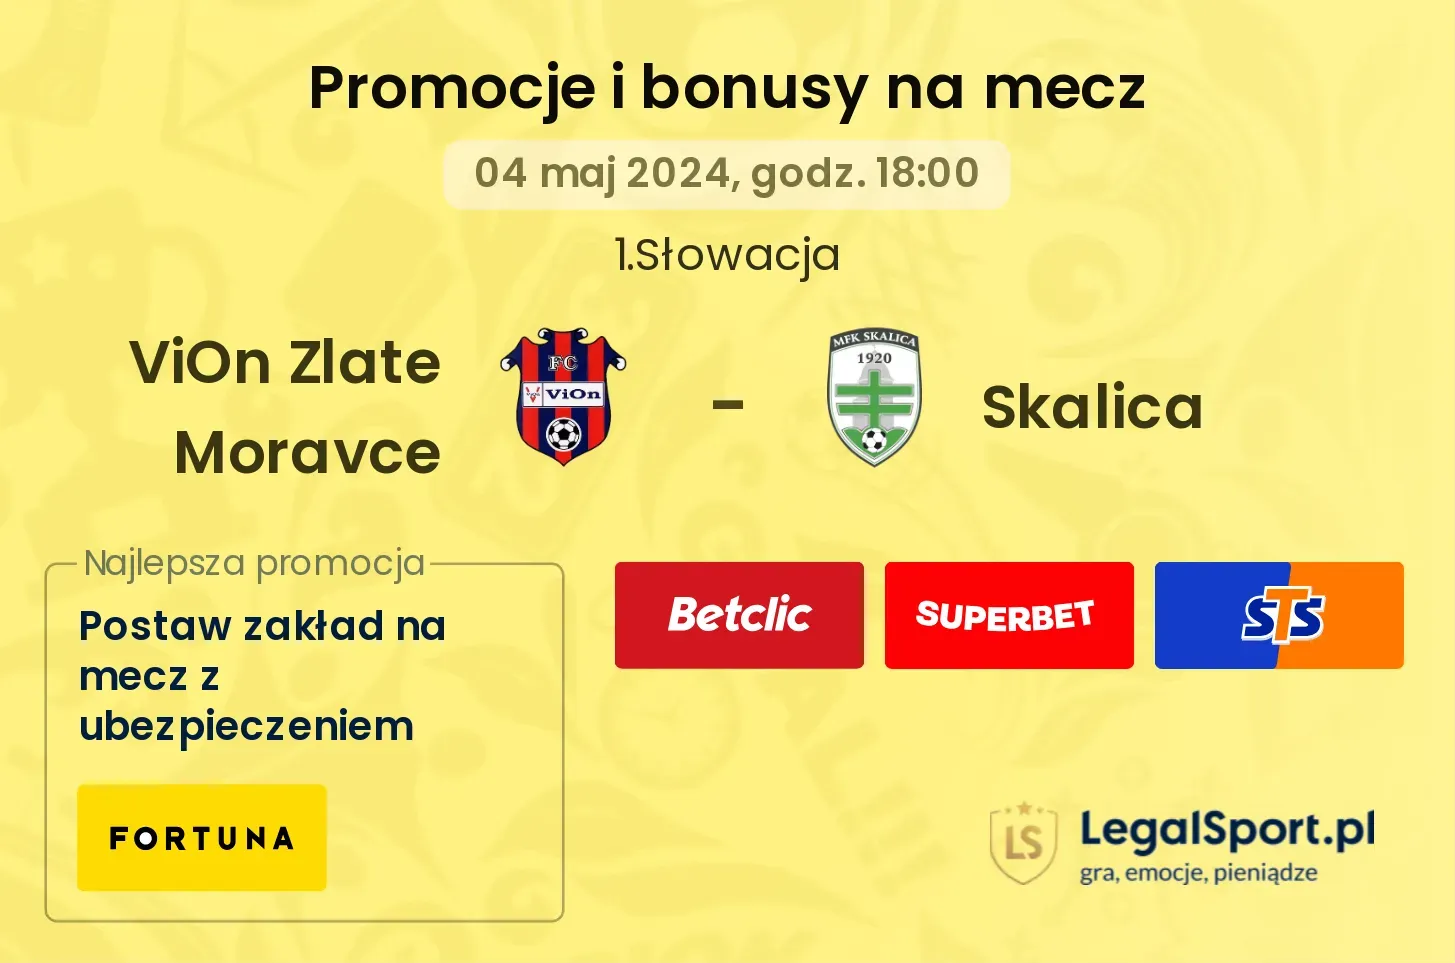 ViOn Zlate Moravce - Skalica promocje bonusy na mecz